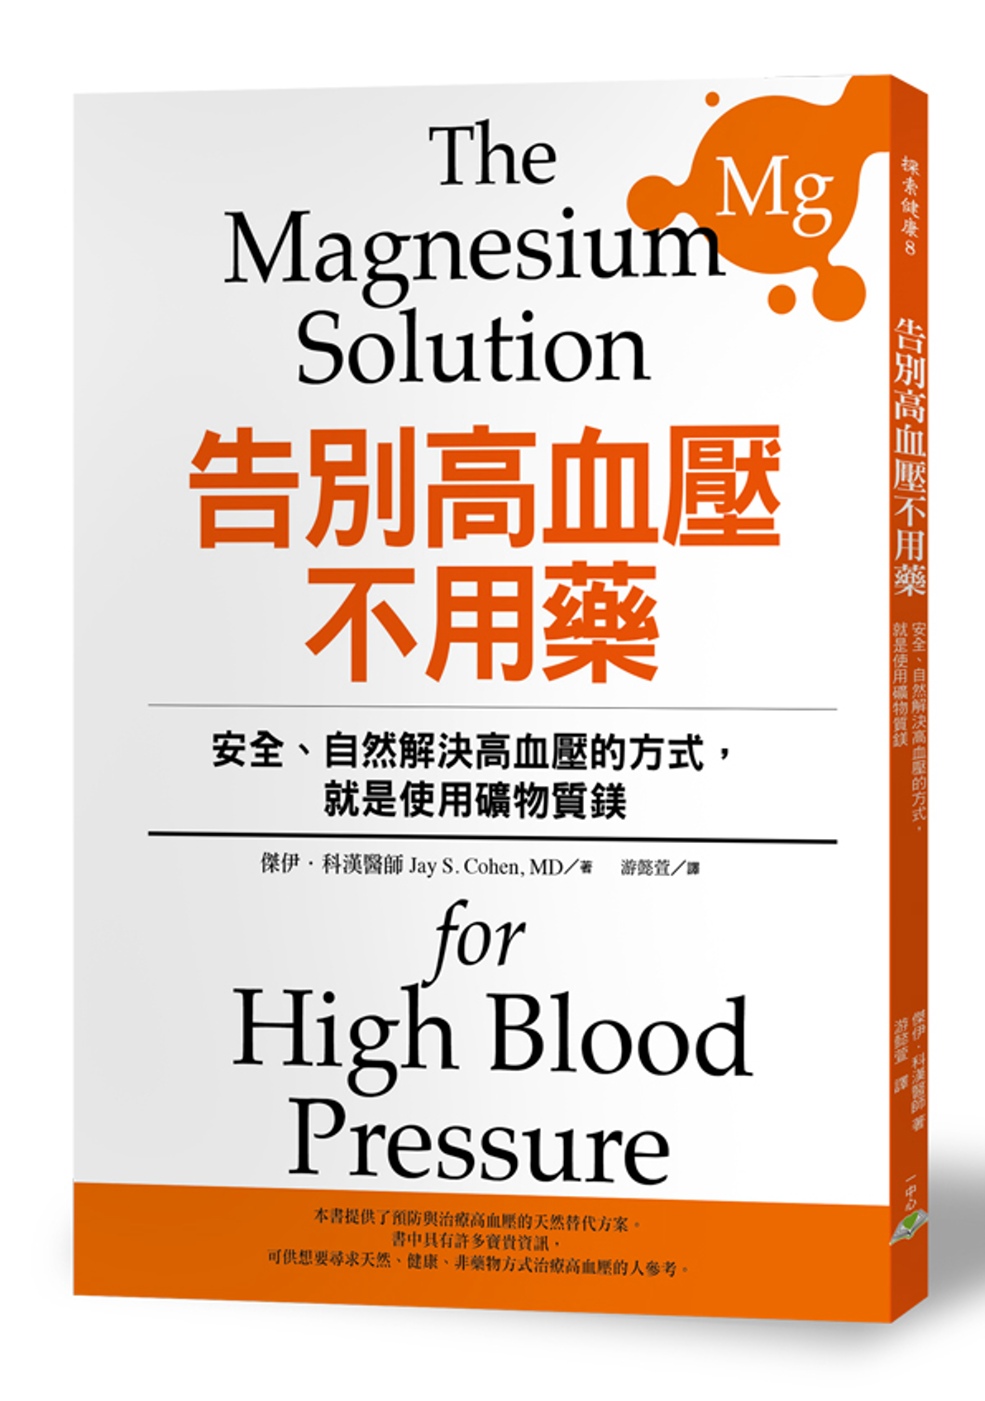 告別高血壓不用藥：安全、自然解決高血壓的方式，就是使用礦物質鎂